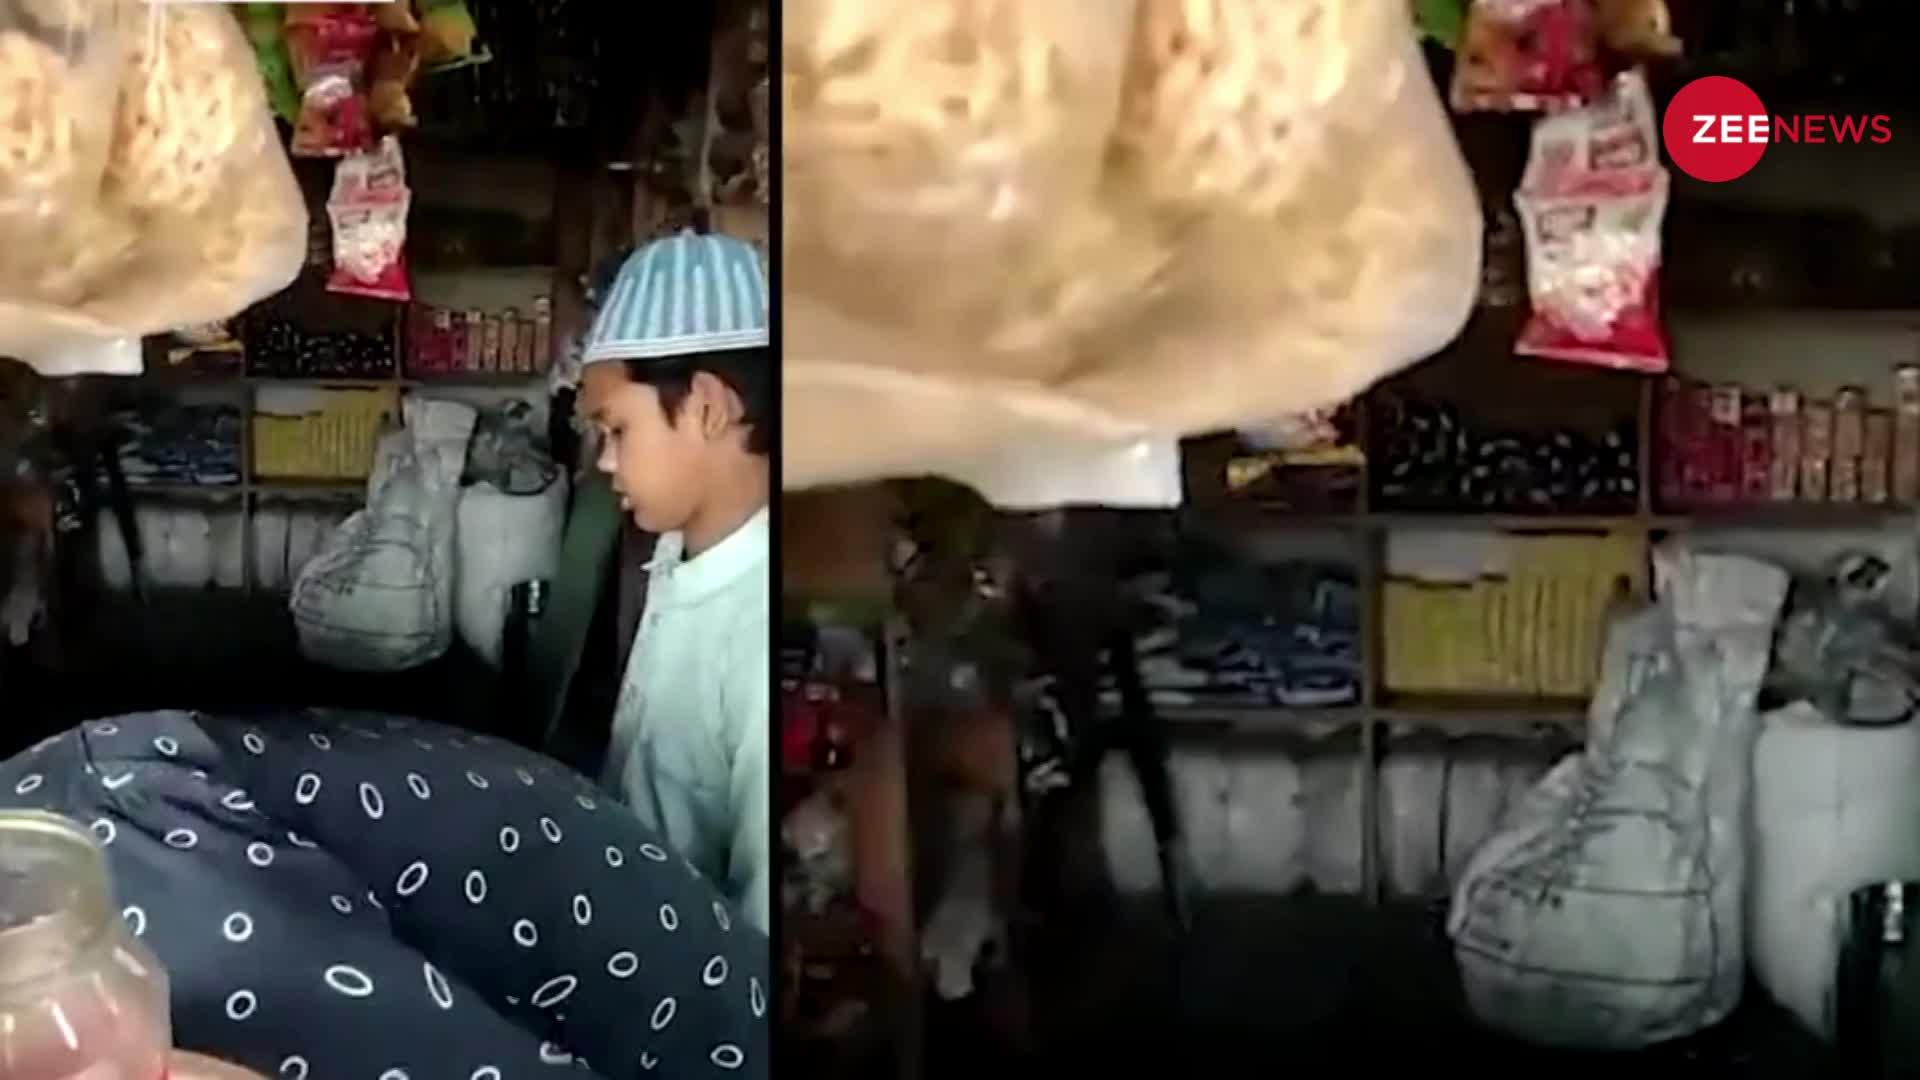 "पाकिस्तान ज़िंदाबाद" के नारे के साथ सामान बेच रहा था दुकानदार, वायरल हो रहा वीडियो